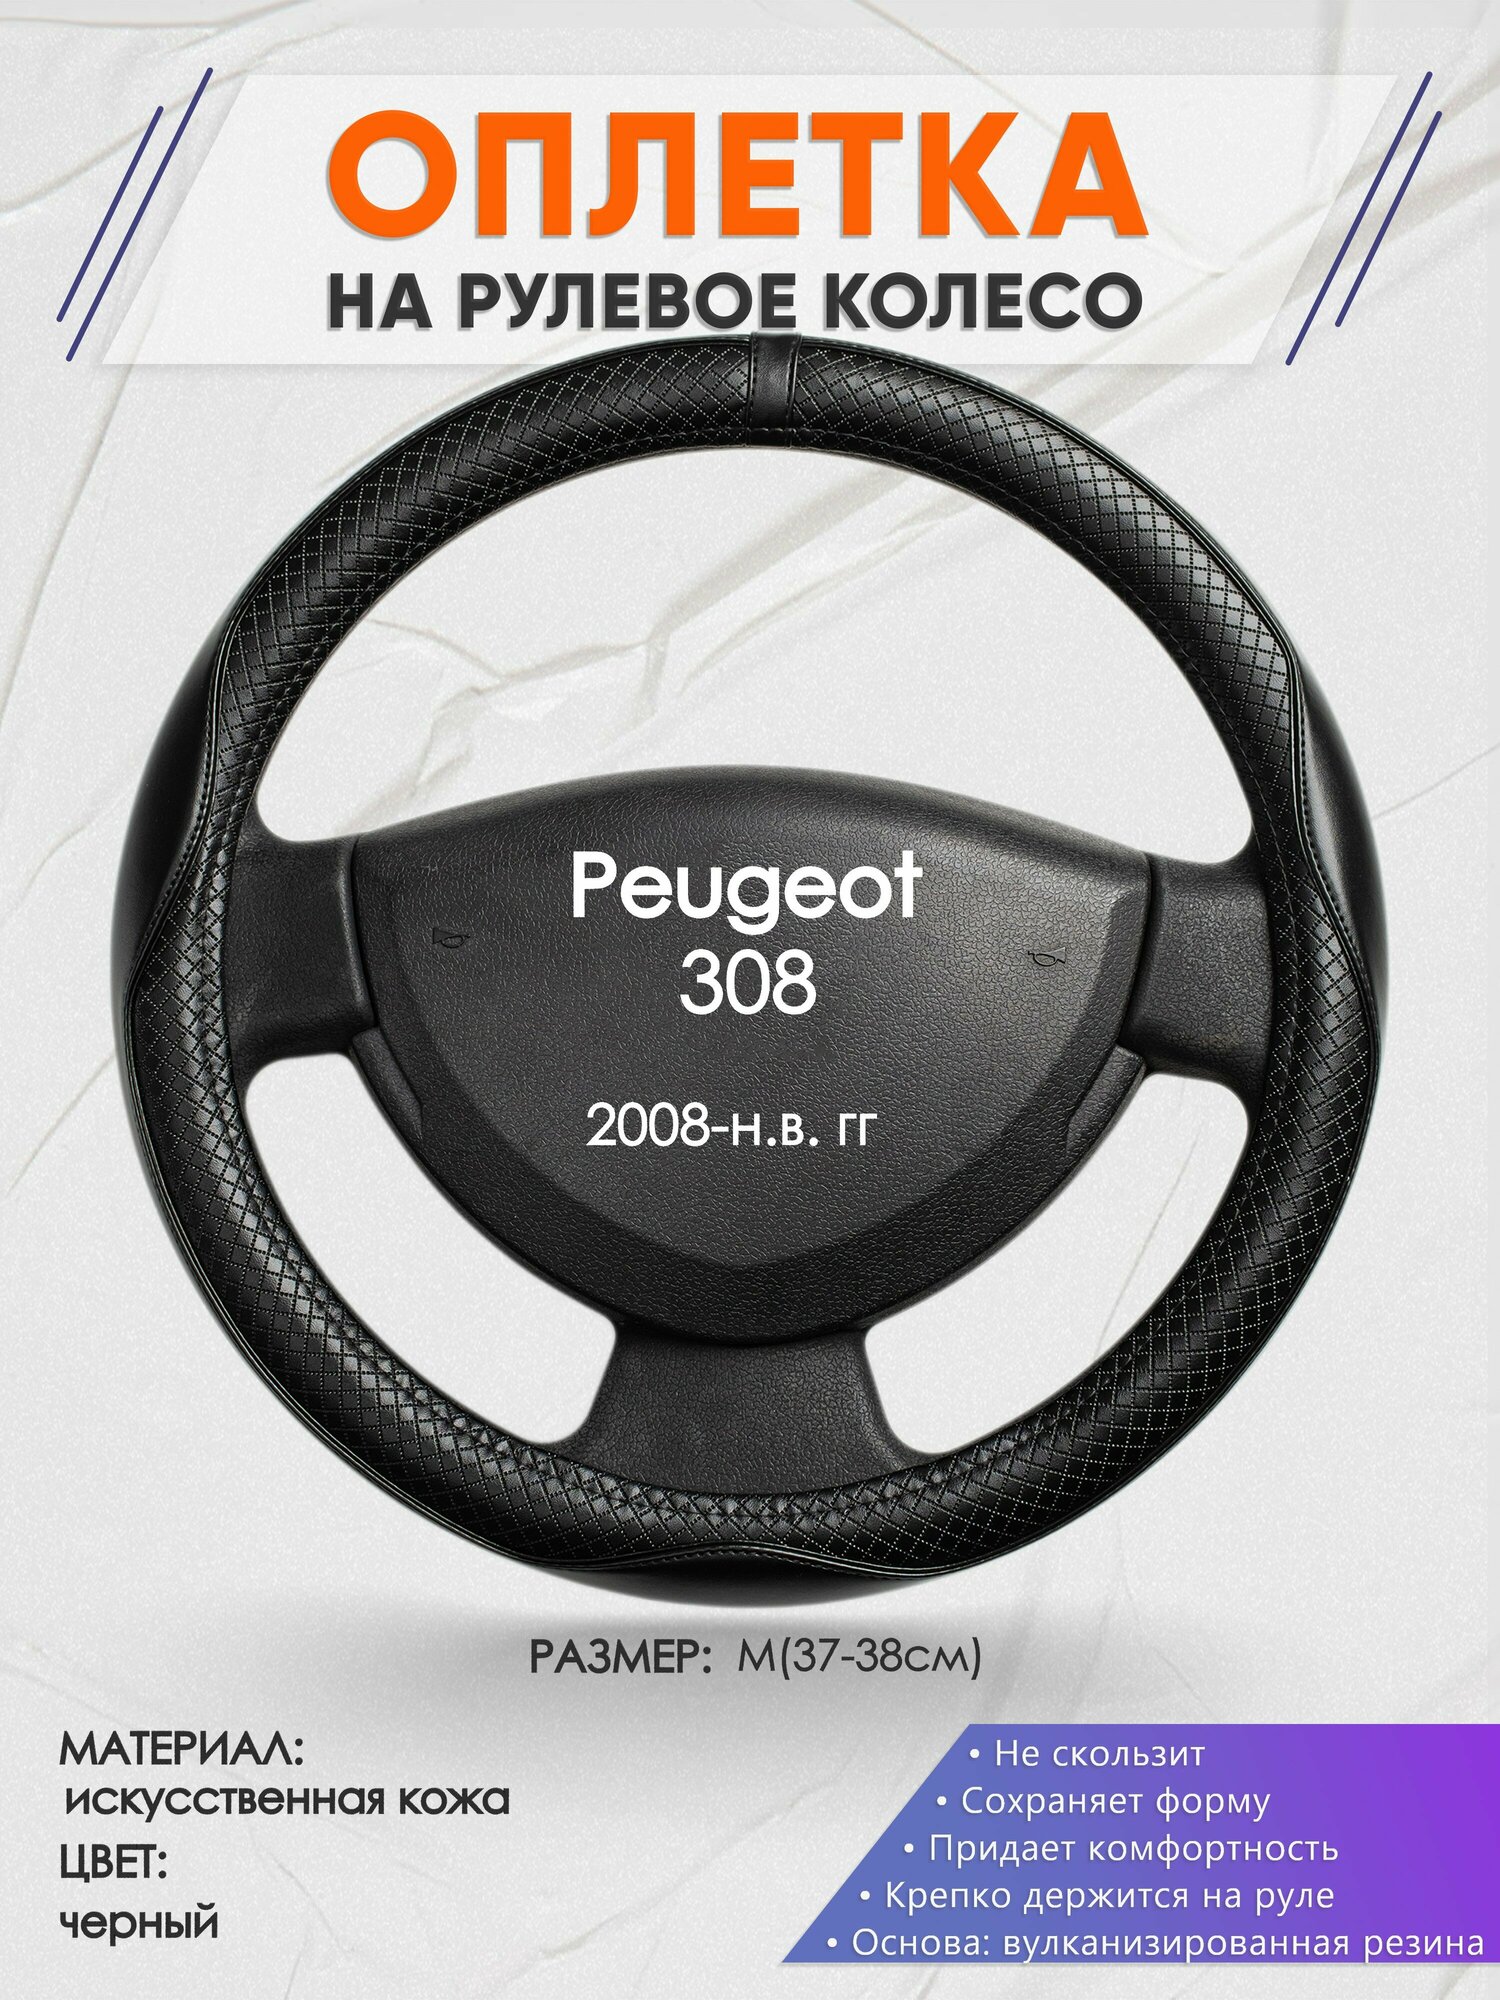 Оплетка на руль для Peugeot 308 (Пежо ) 2008-н. в M(37-38см) Искусственная кожа 87